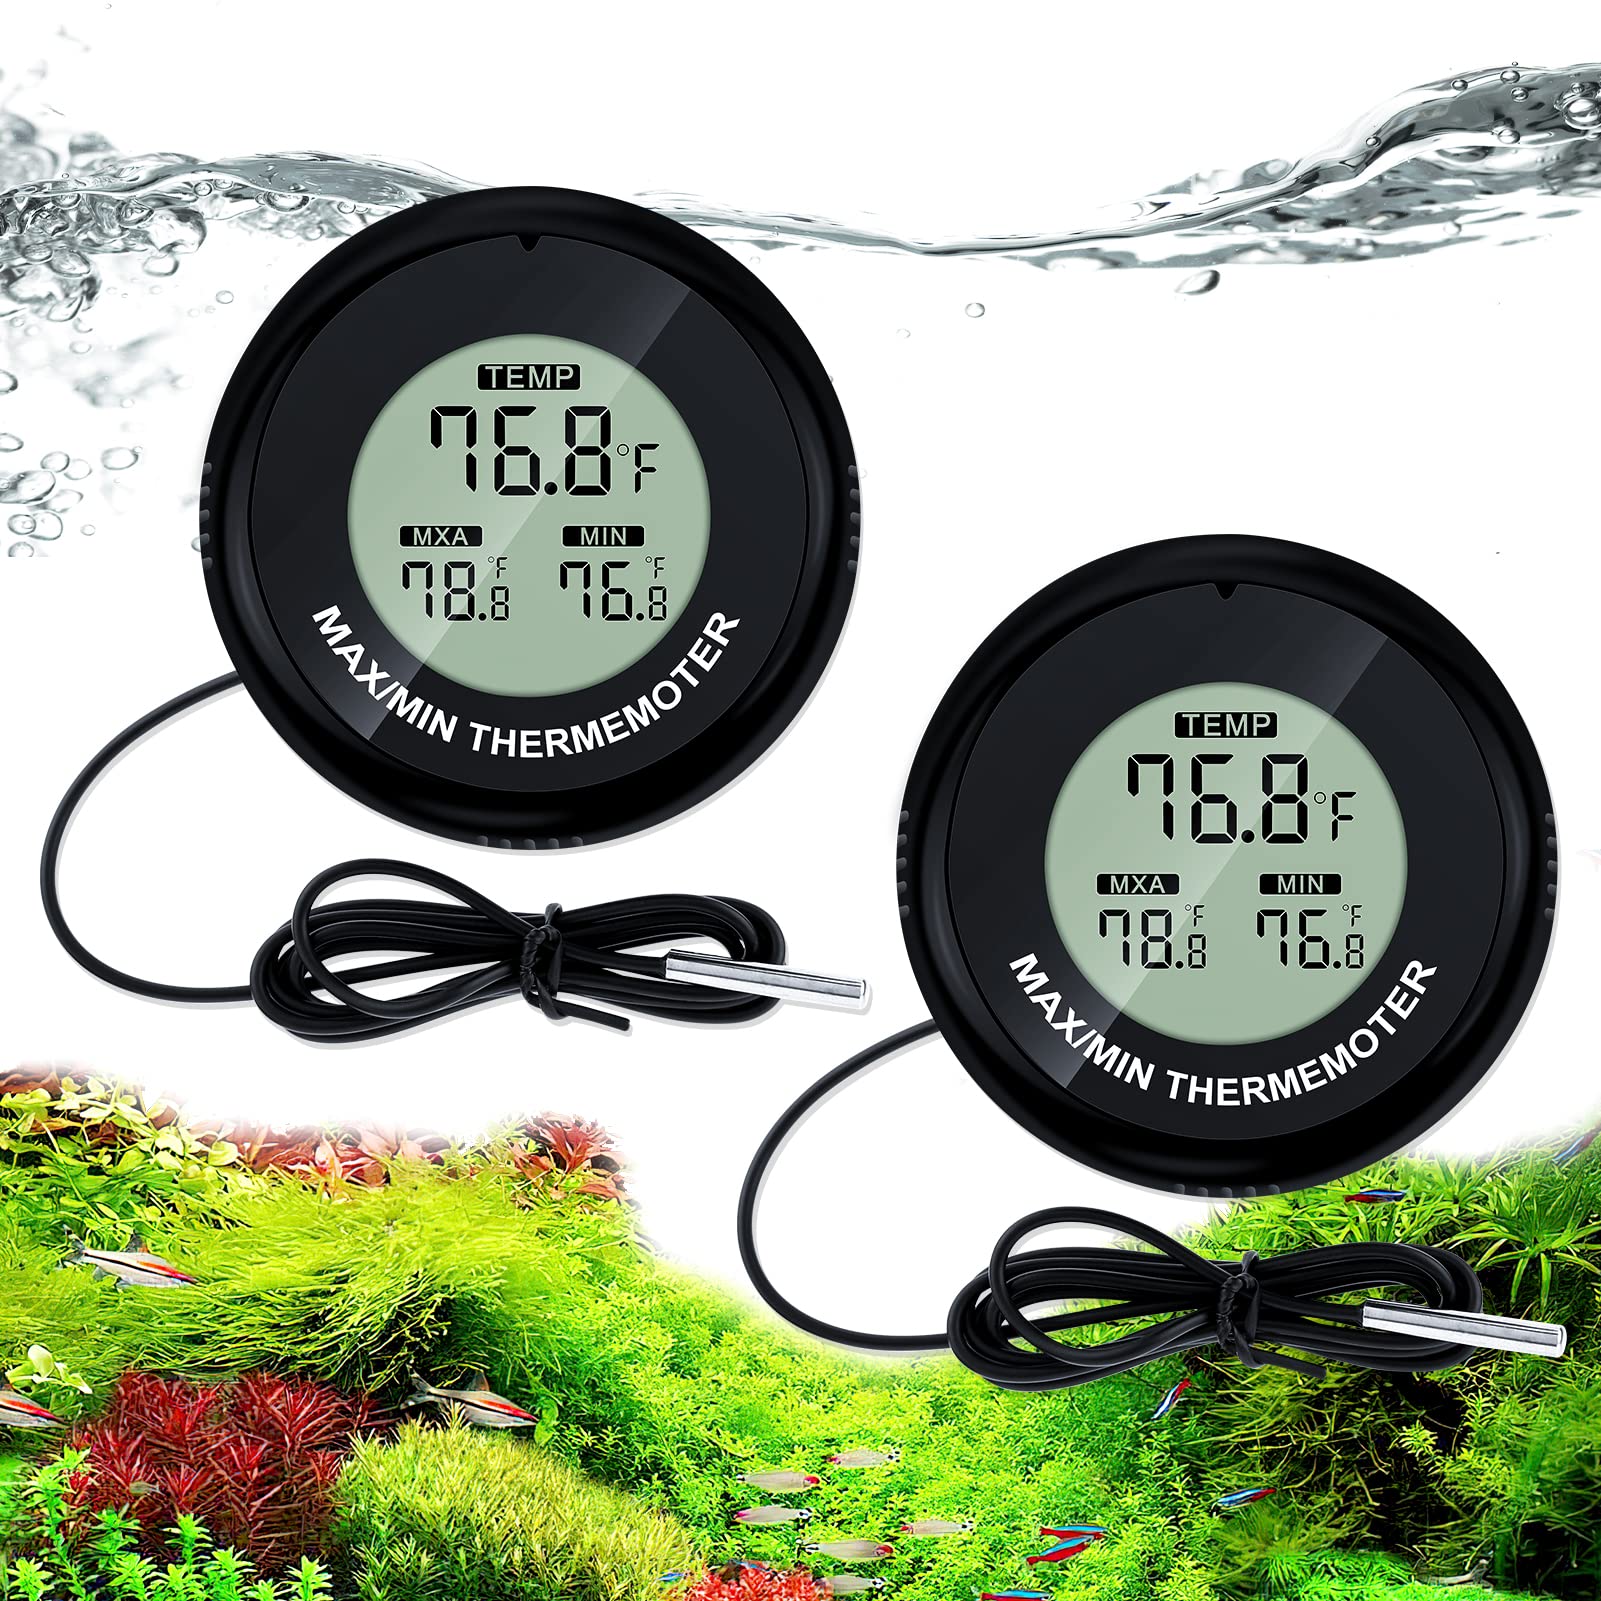 LCD Digital Fish Tank Reptile Aquarium Water Meter Thermometer Temperature